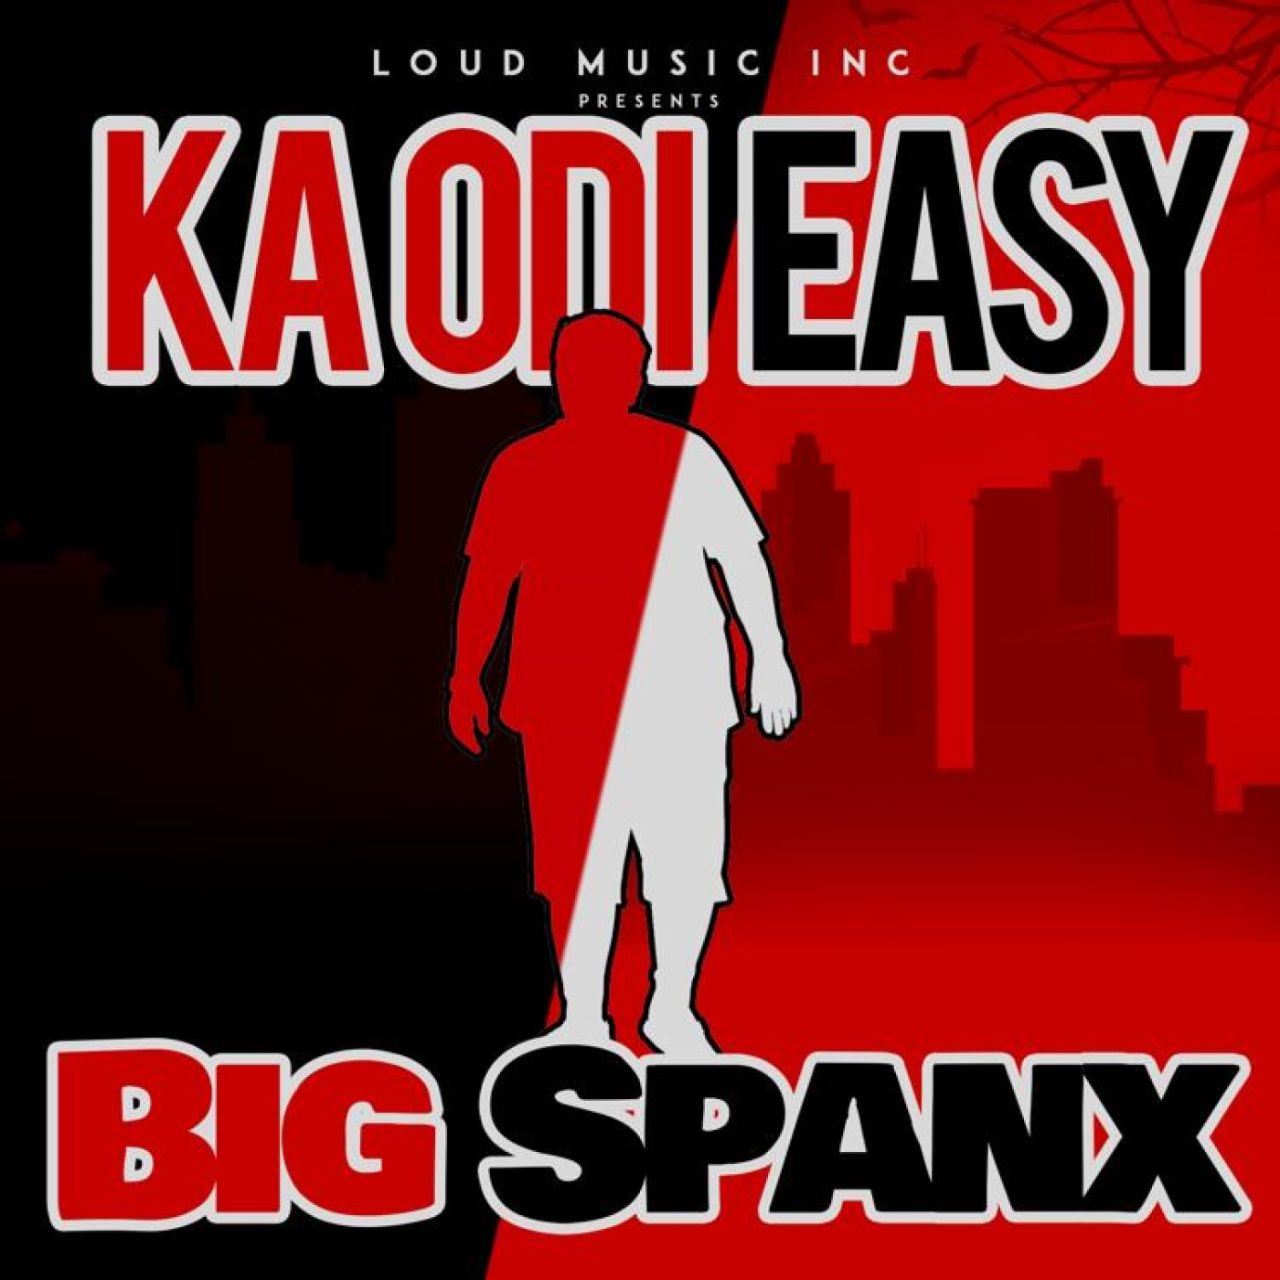 Big Spanx - Kaodi Easy